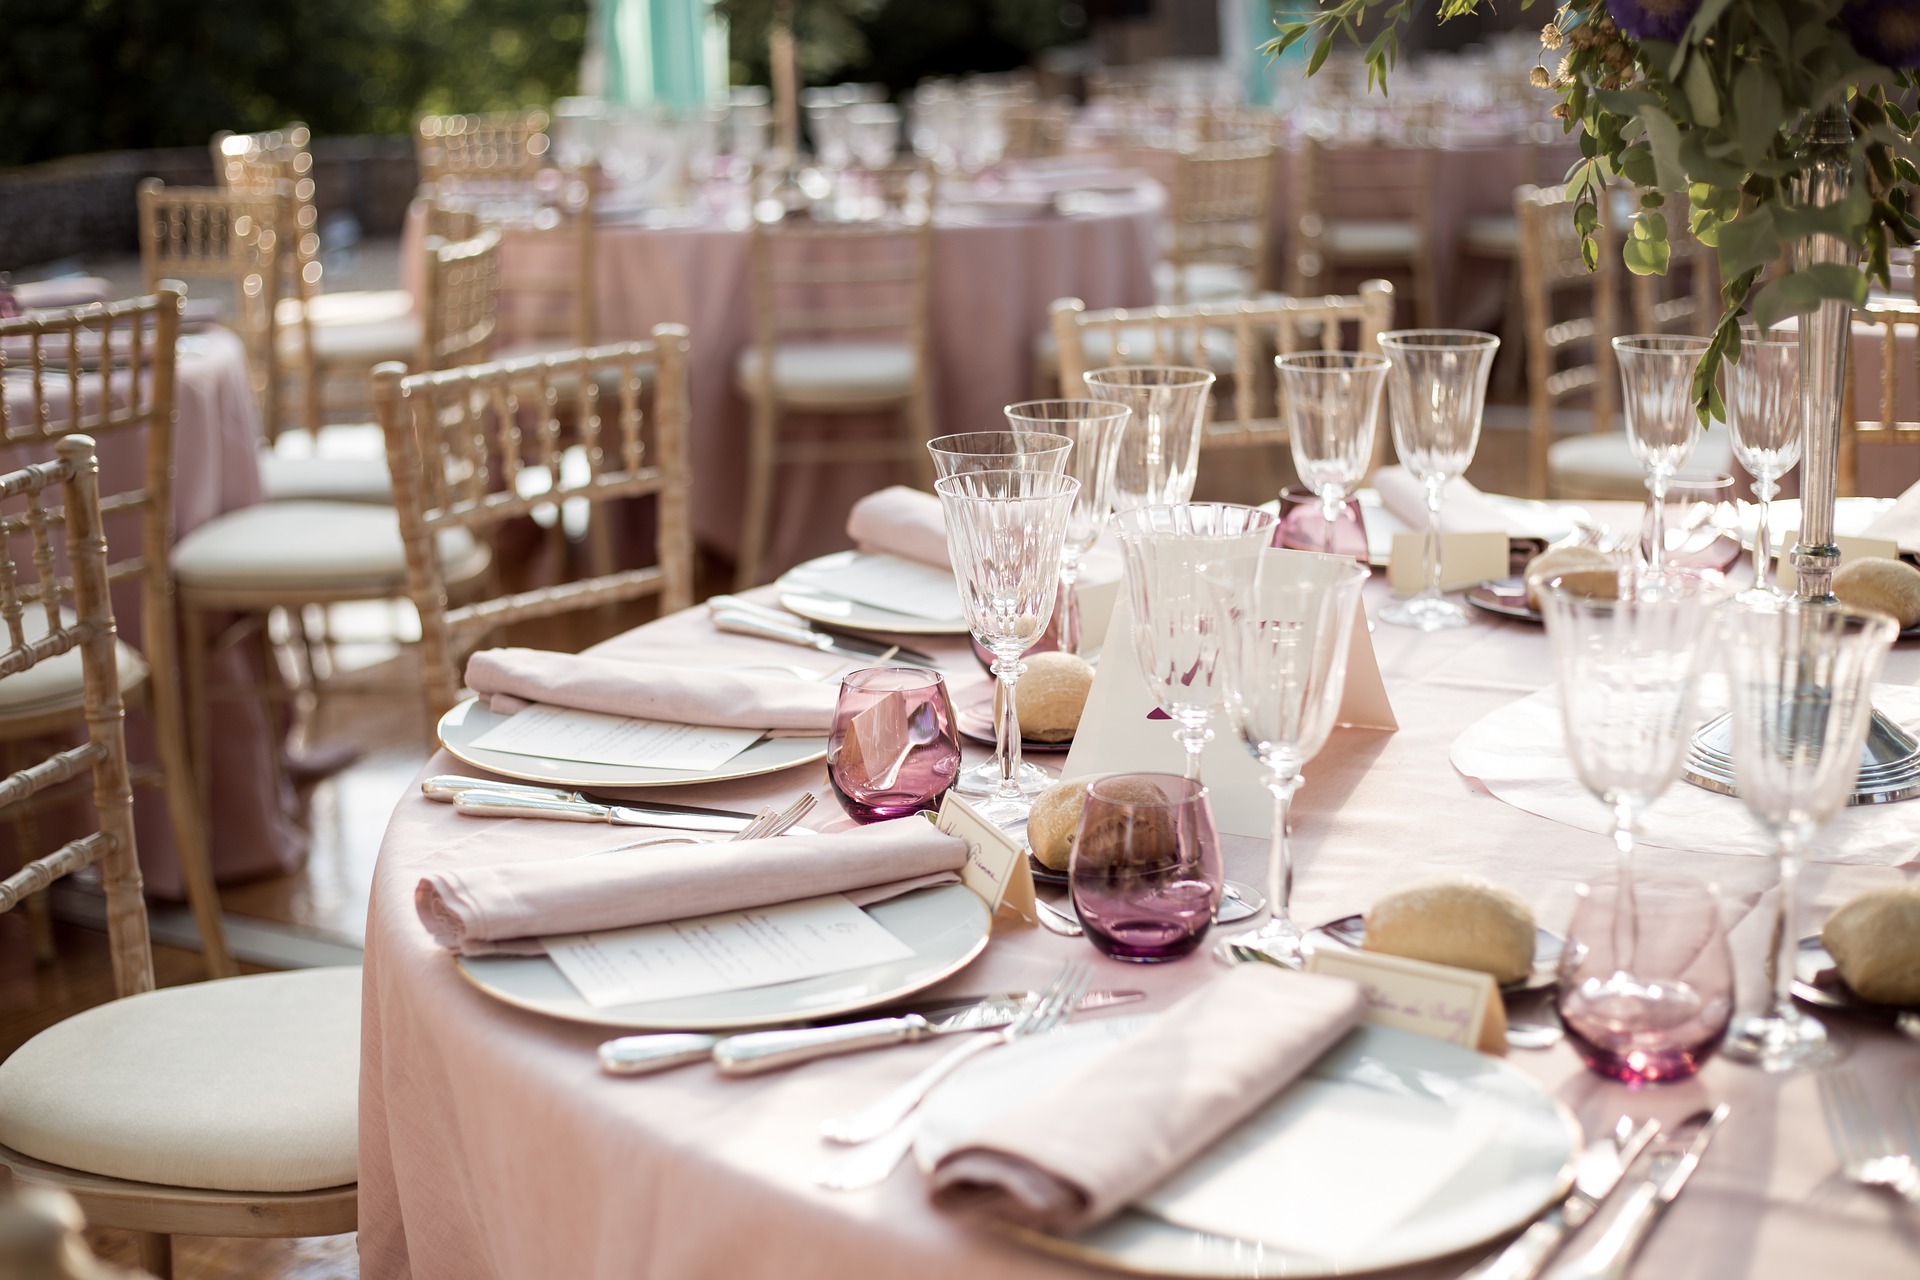 Thème de mariage, décoration de table, rose poudré et beige, chaise napoléon beige, assiettes porcelaines blanches